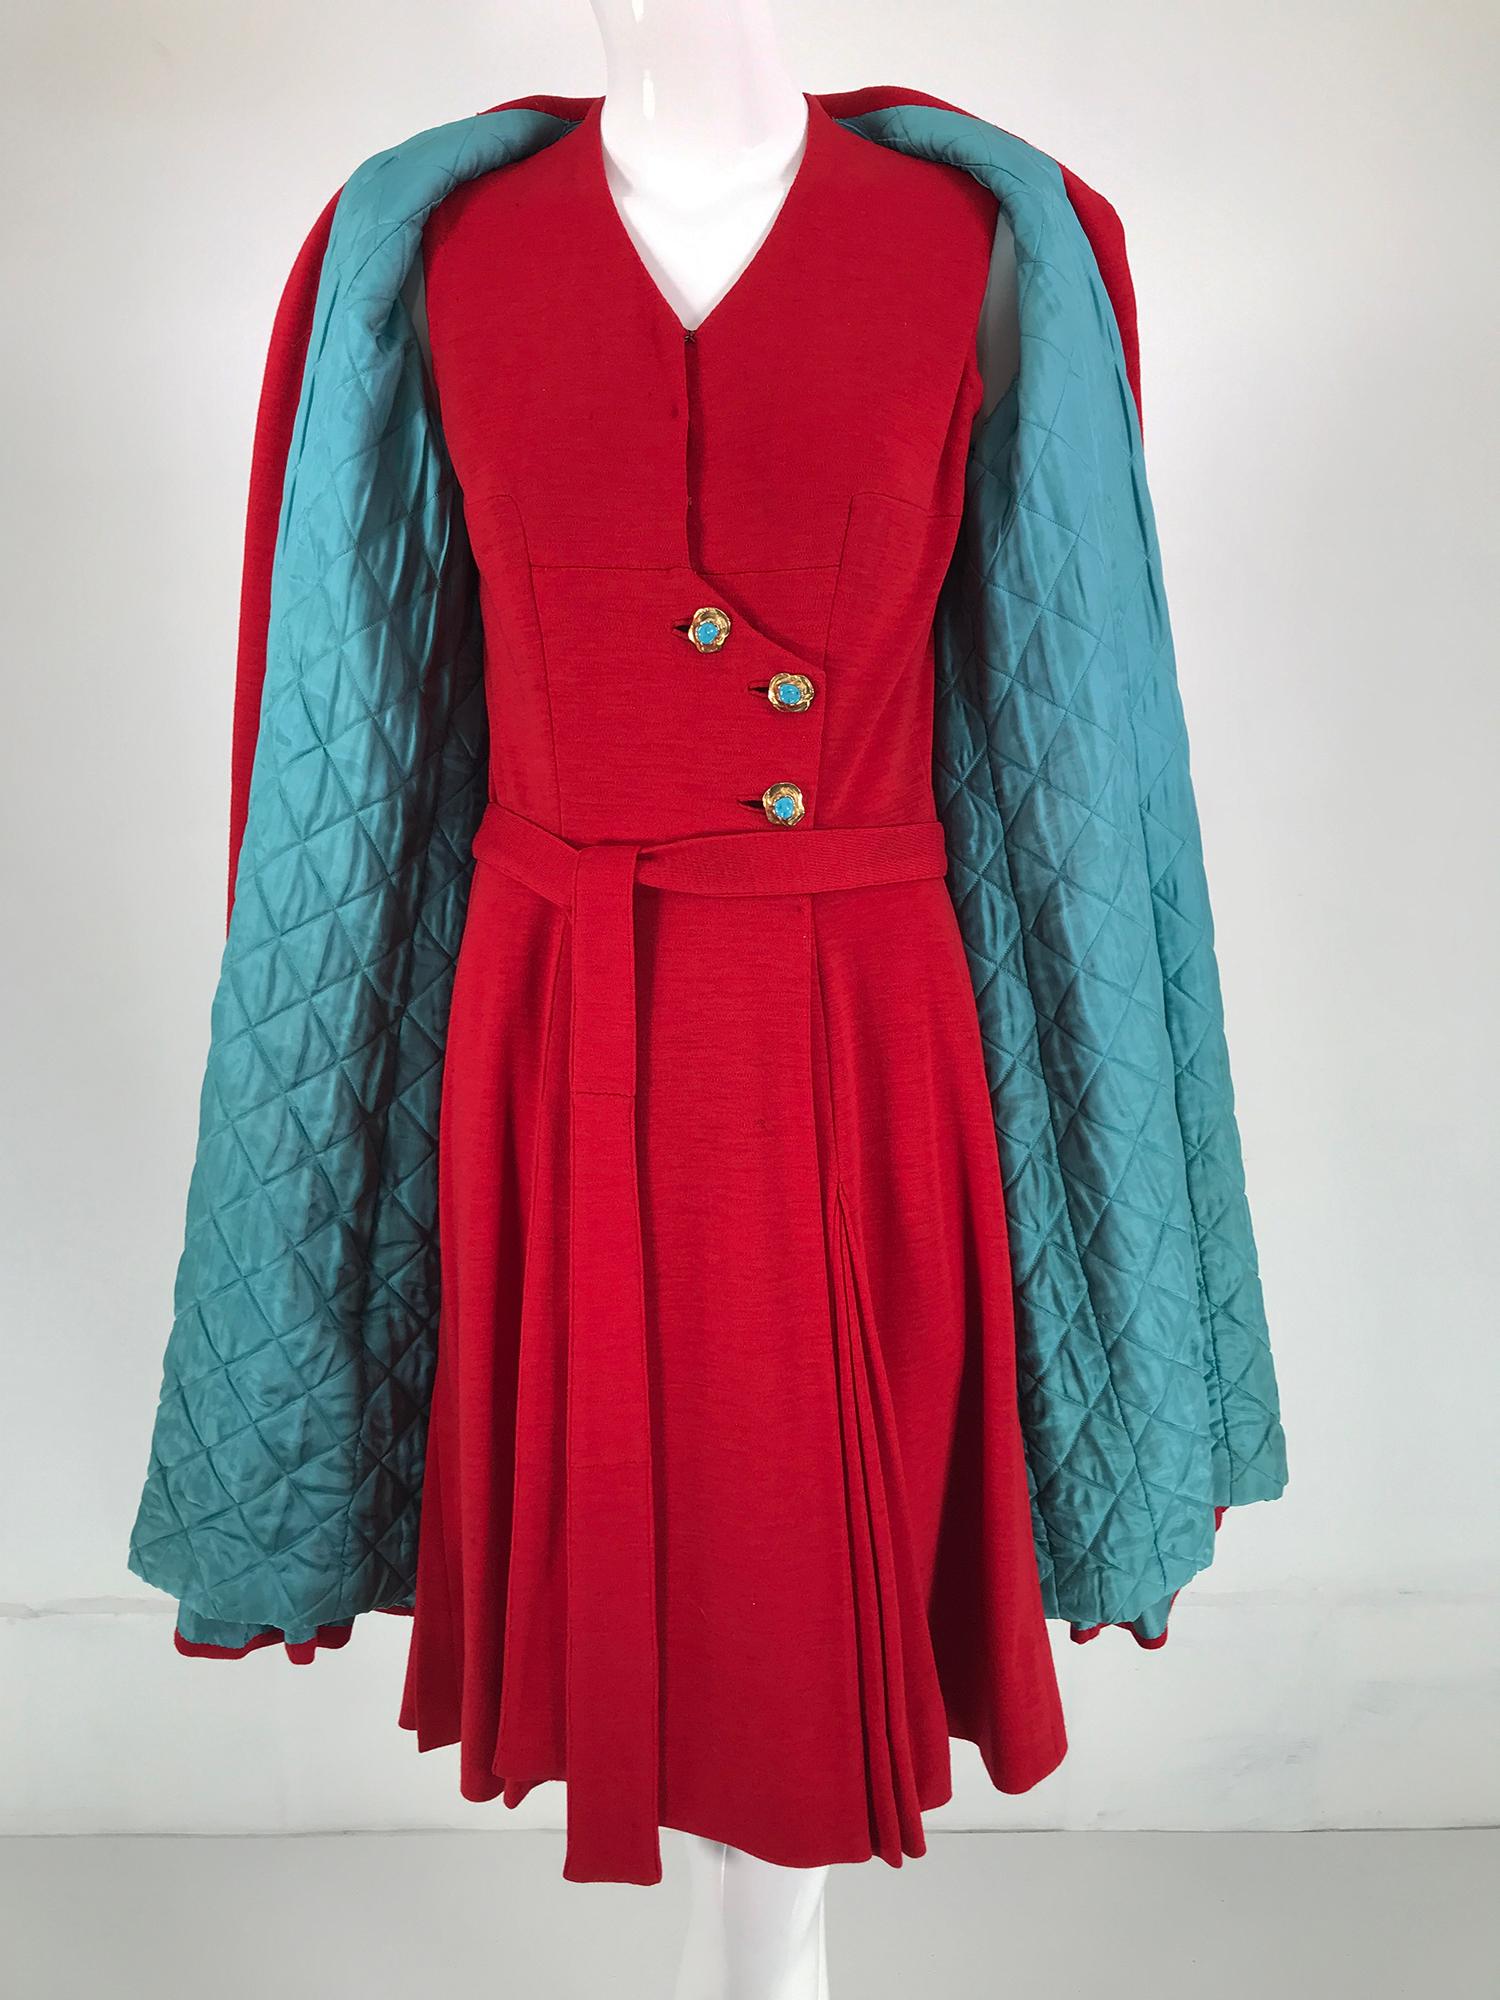 Robe et manteau deux pièces en jersey de laine de Chanel Haute Couture rouge, avec boutons en verre Gripoix or et turquoise, dessinés par Coco Chanel dans les années 1950. Avant Chanel, le jersey était une matière peu noble, réservée aux